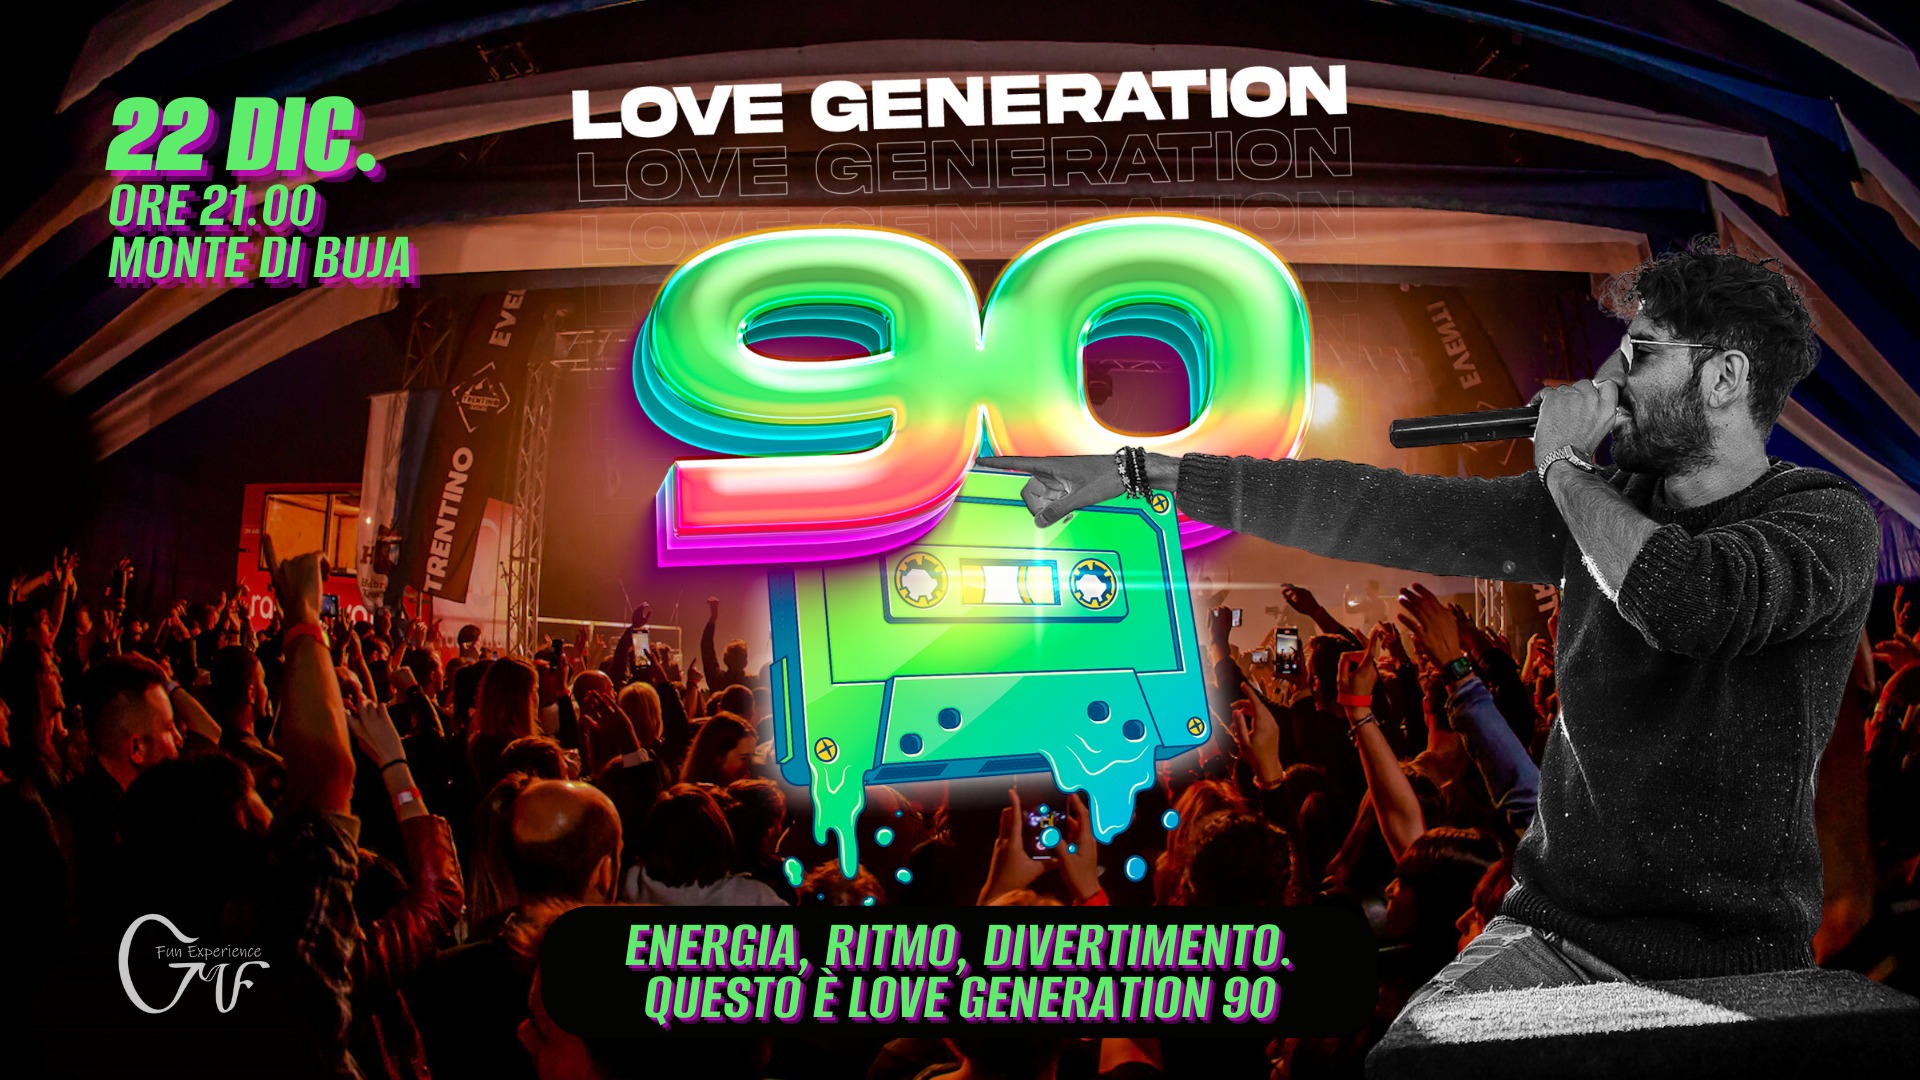 LOVE GENERATION 90 - FESTA A MONTE DI BUJA